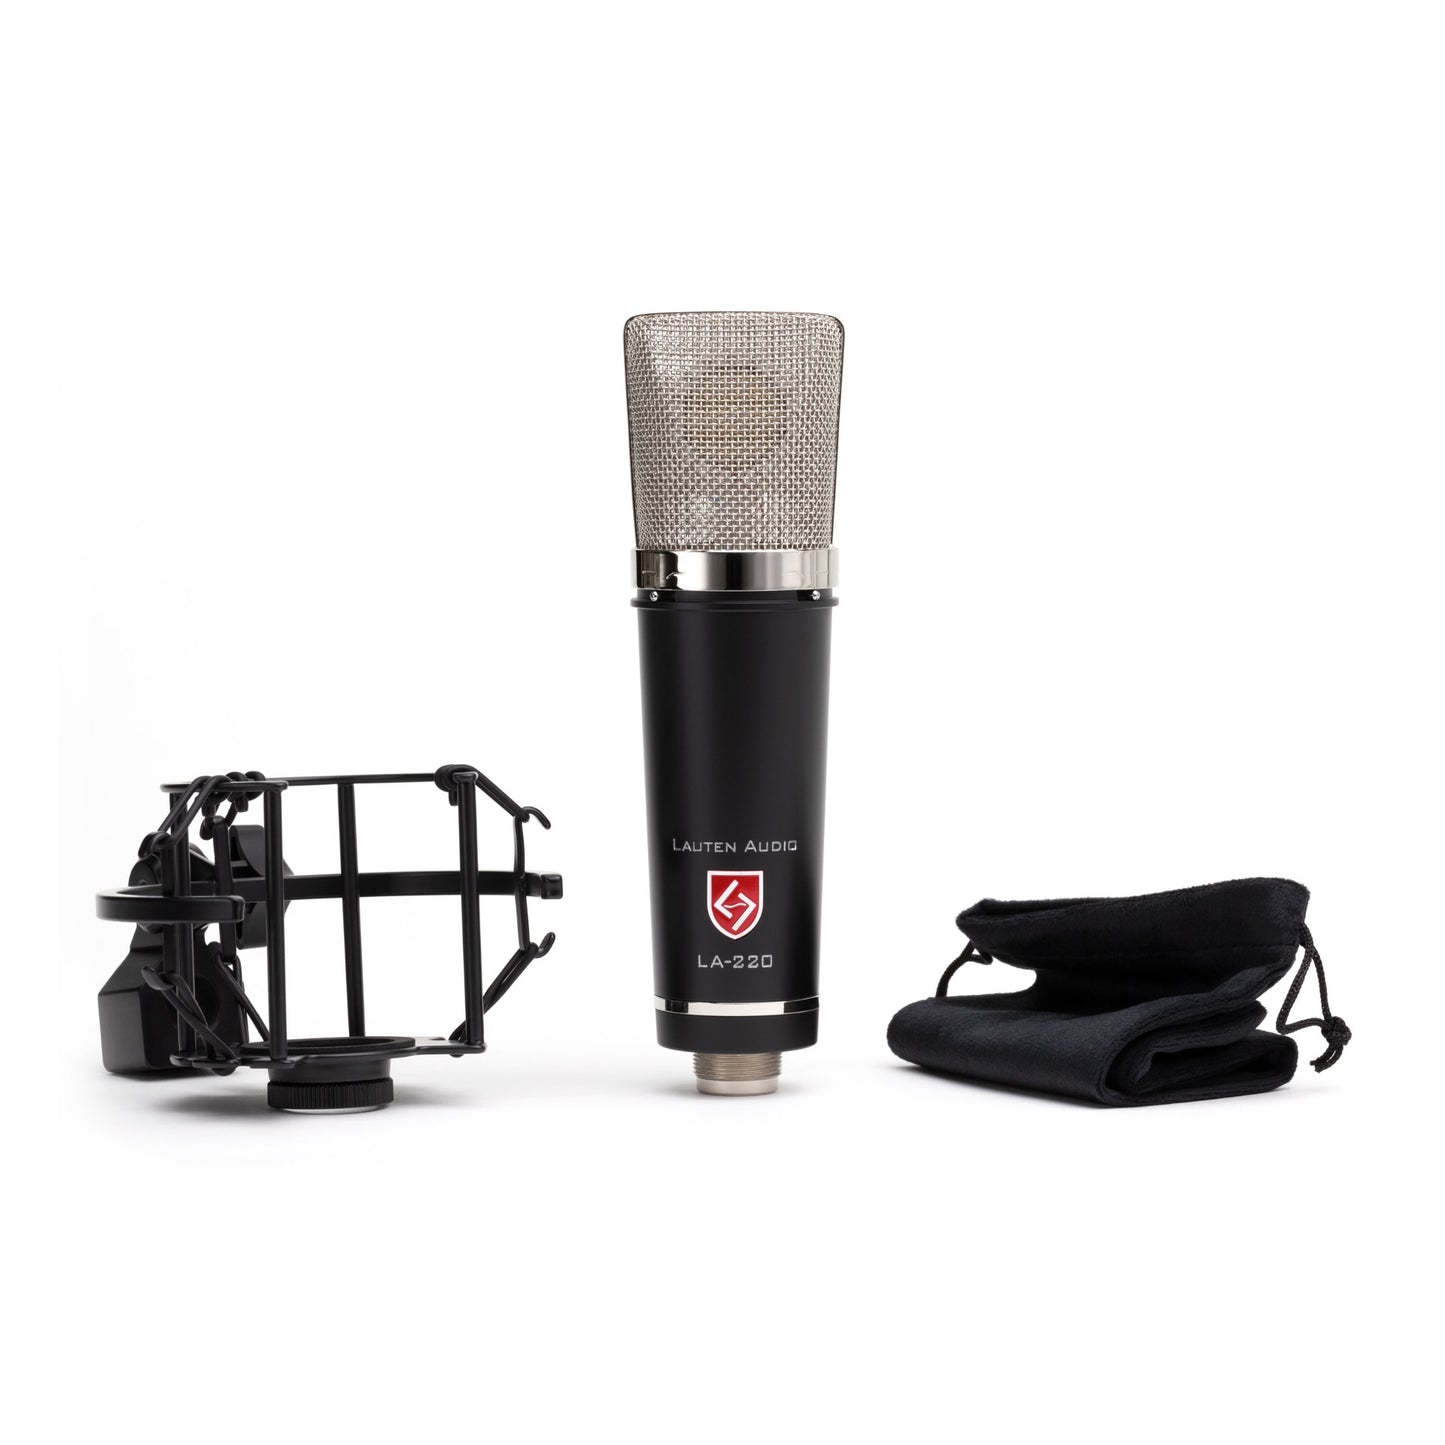 Lauten Audio LA-220 V2 FET Microphone